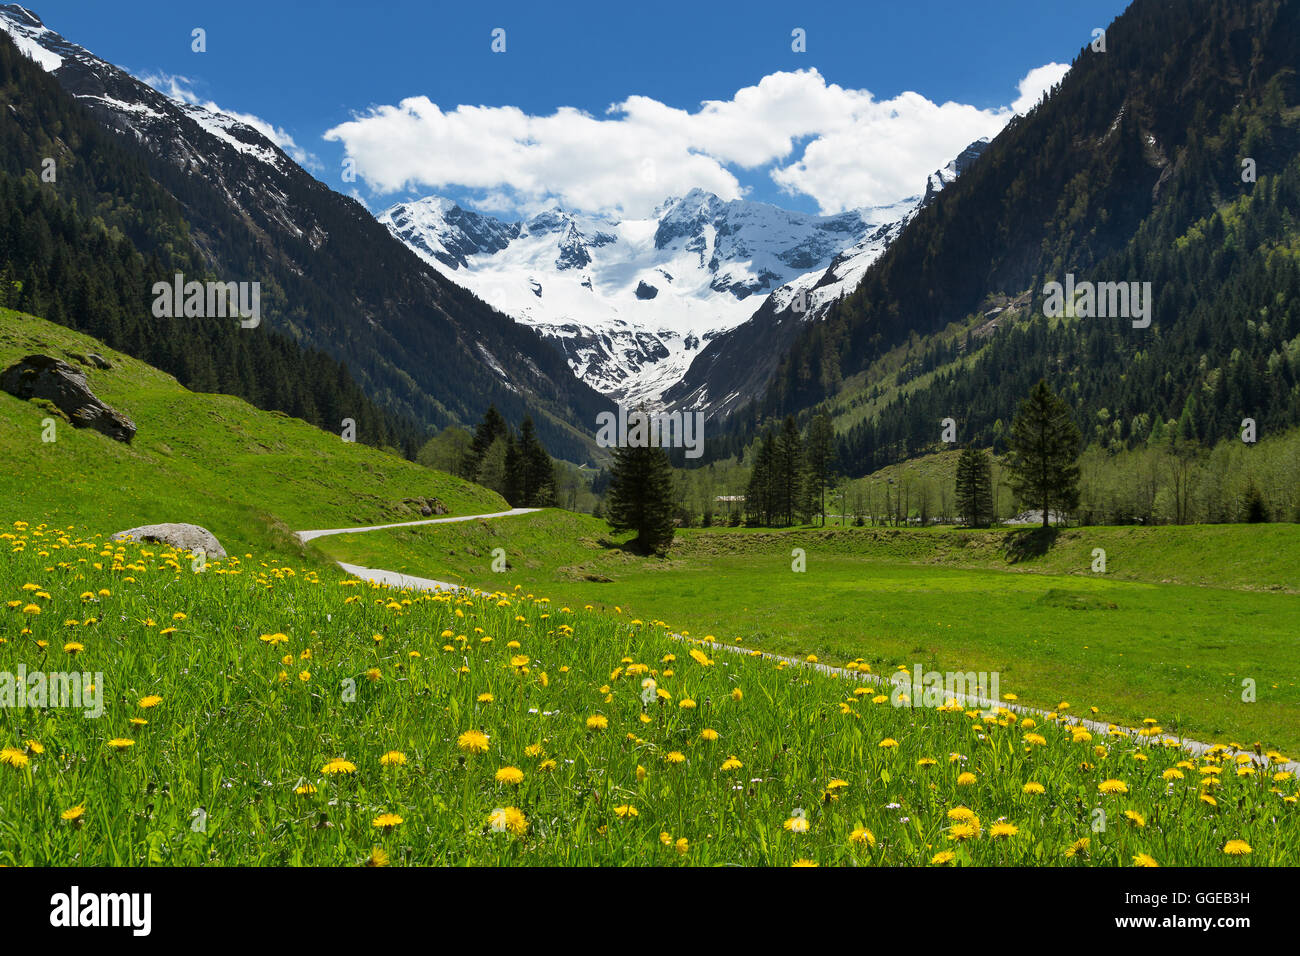 Fantastico scenario della valle alpina in primavera con montagne innevate sotto il cielo nuvoloso e bei fiori in primo piano Foto Stock